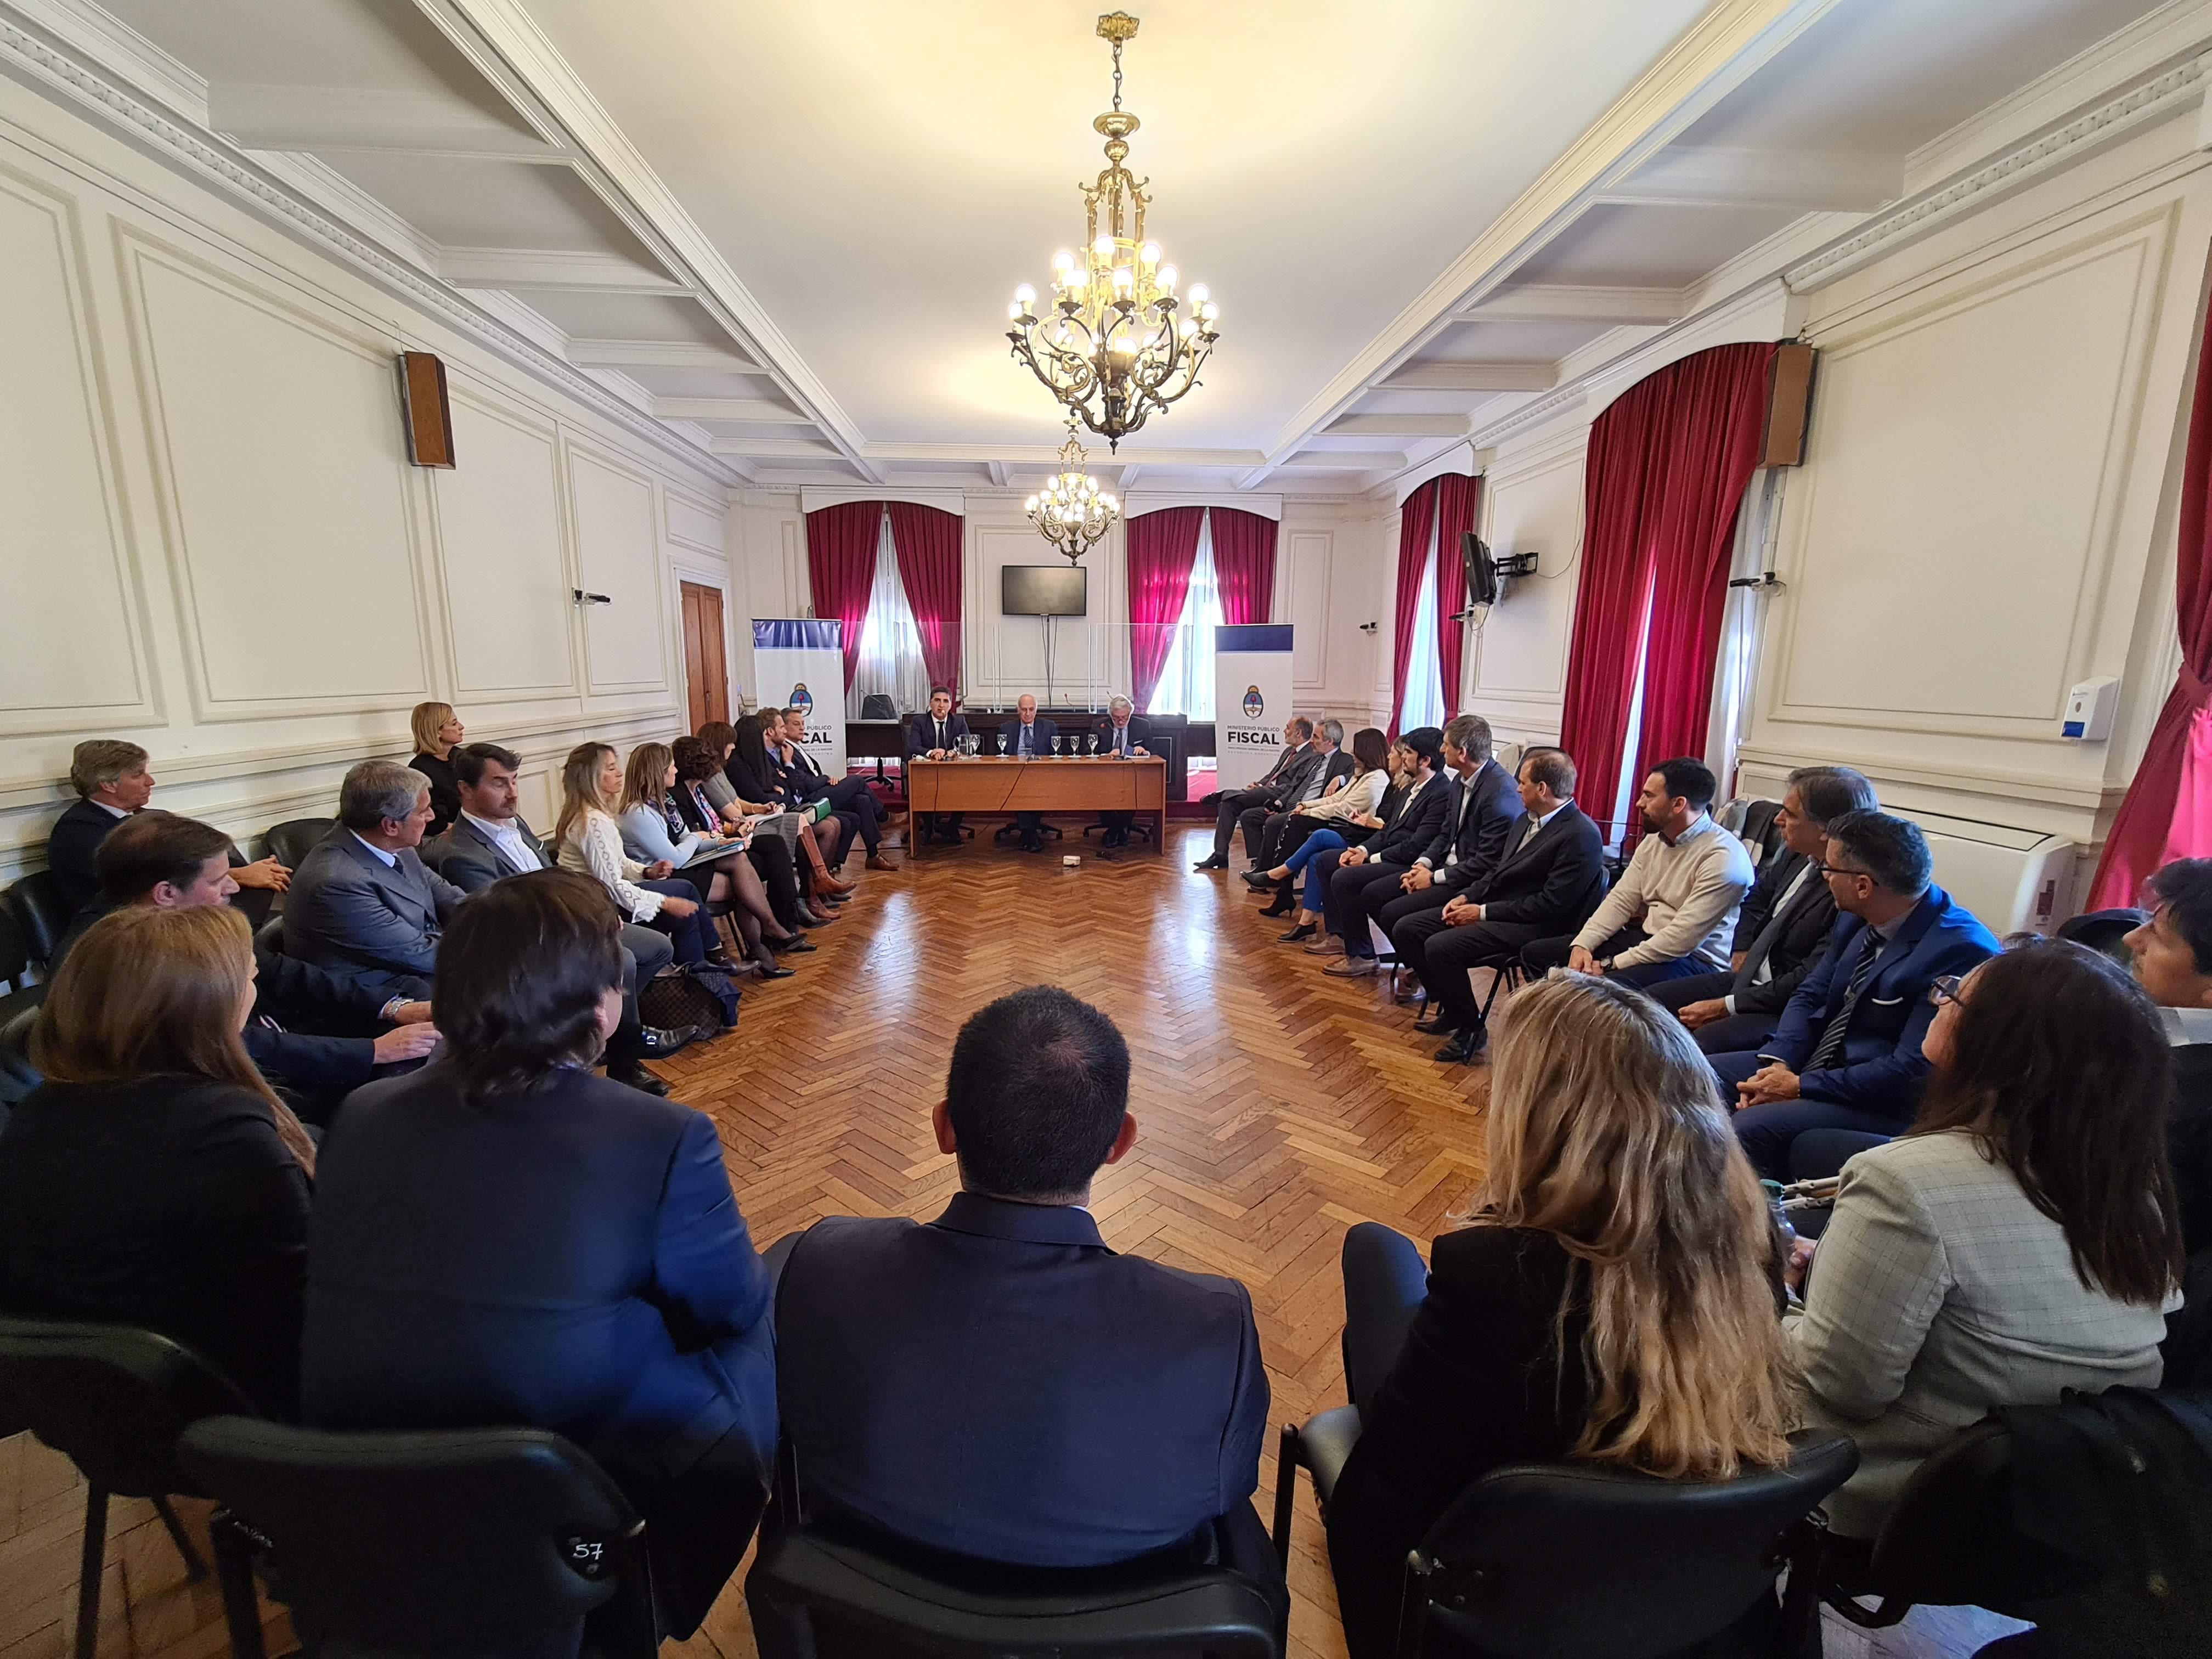 La reunión se celebró en la sala de audiencias de los Tribunales Federales de La Plata.  - Foto: Ministerio Público Fiscal de la Nación